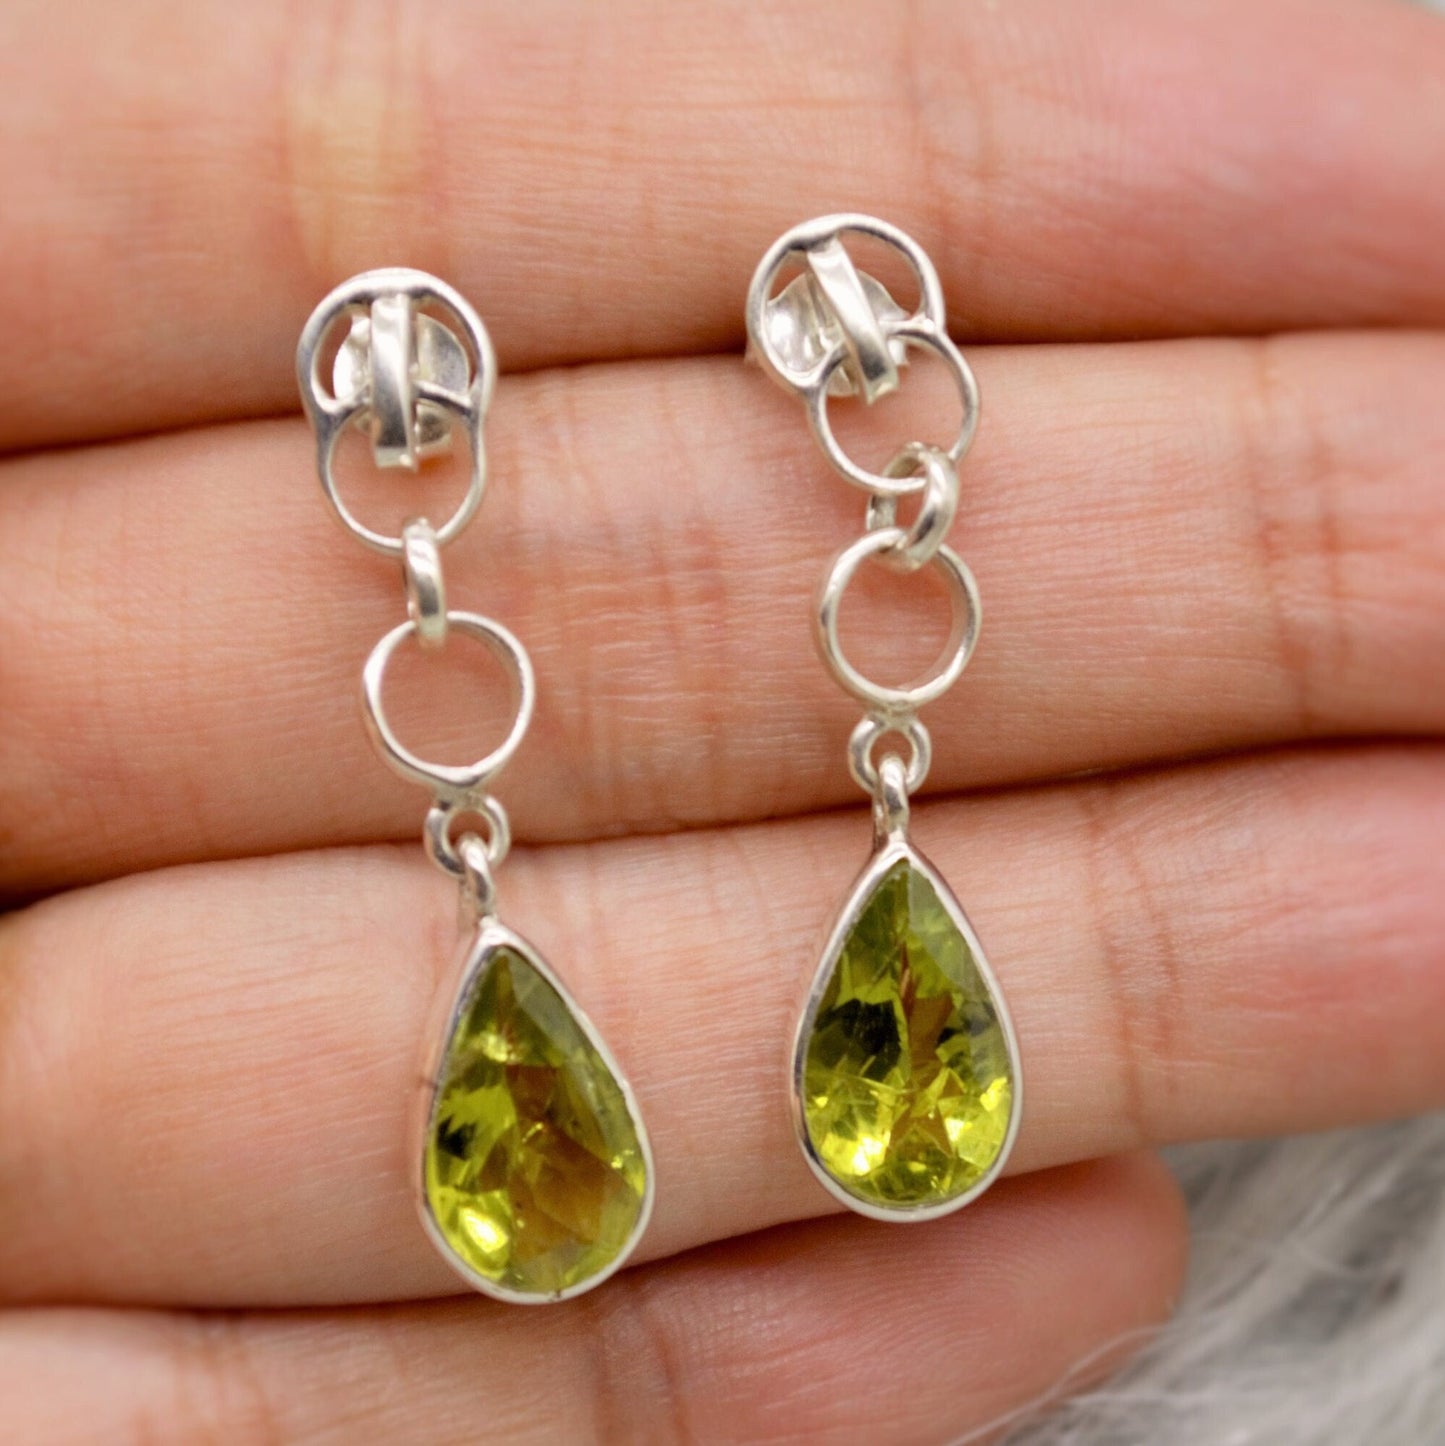 Peridot Earrings, Sterling Silver, August Birthstone, Unique Statement Dangle Drop Earrings, Green Gemstone Earrings, Gifts For Her